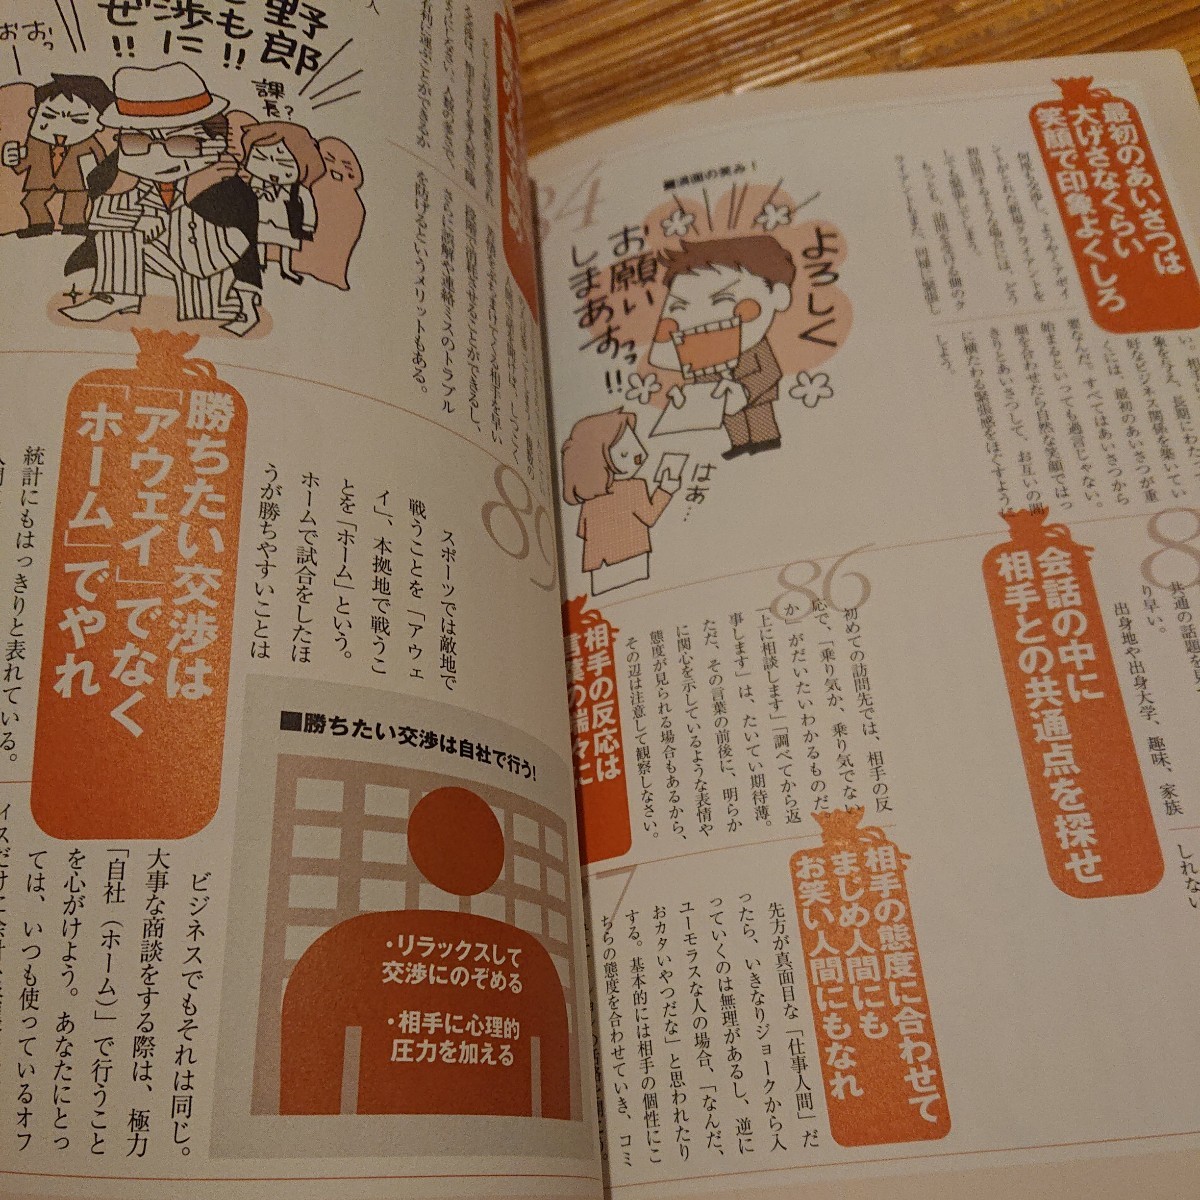 別冊宝島1123『ニッポンのサラリーマンやまだ課長の知恵袋』 2005年